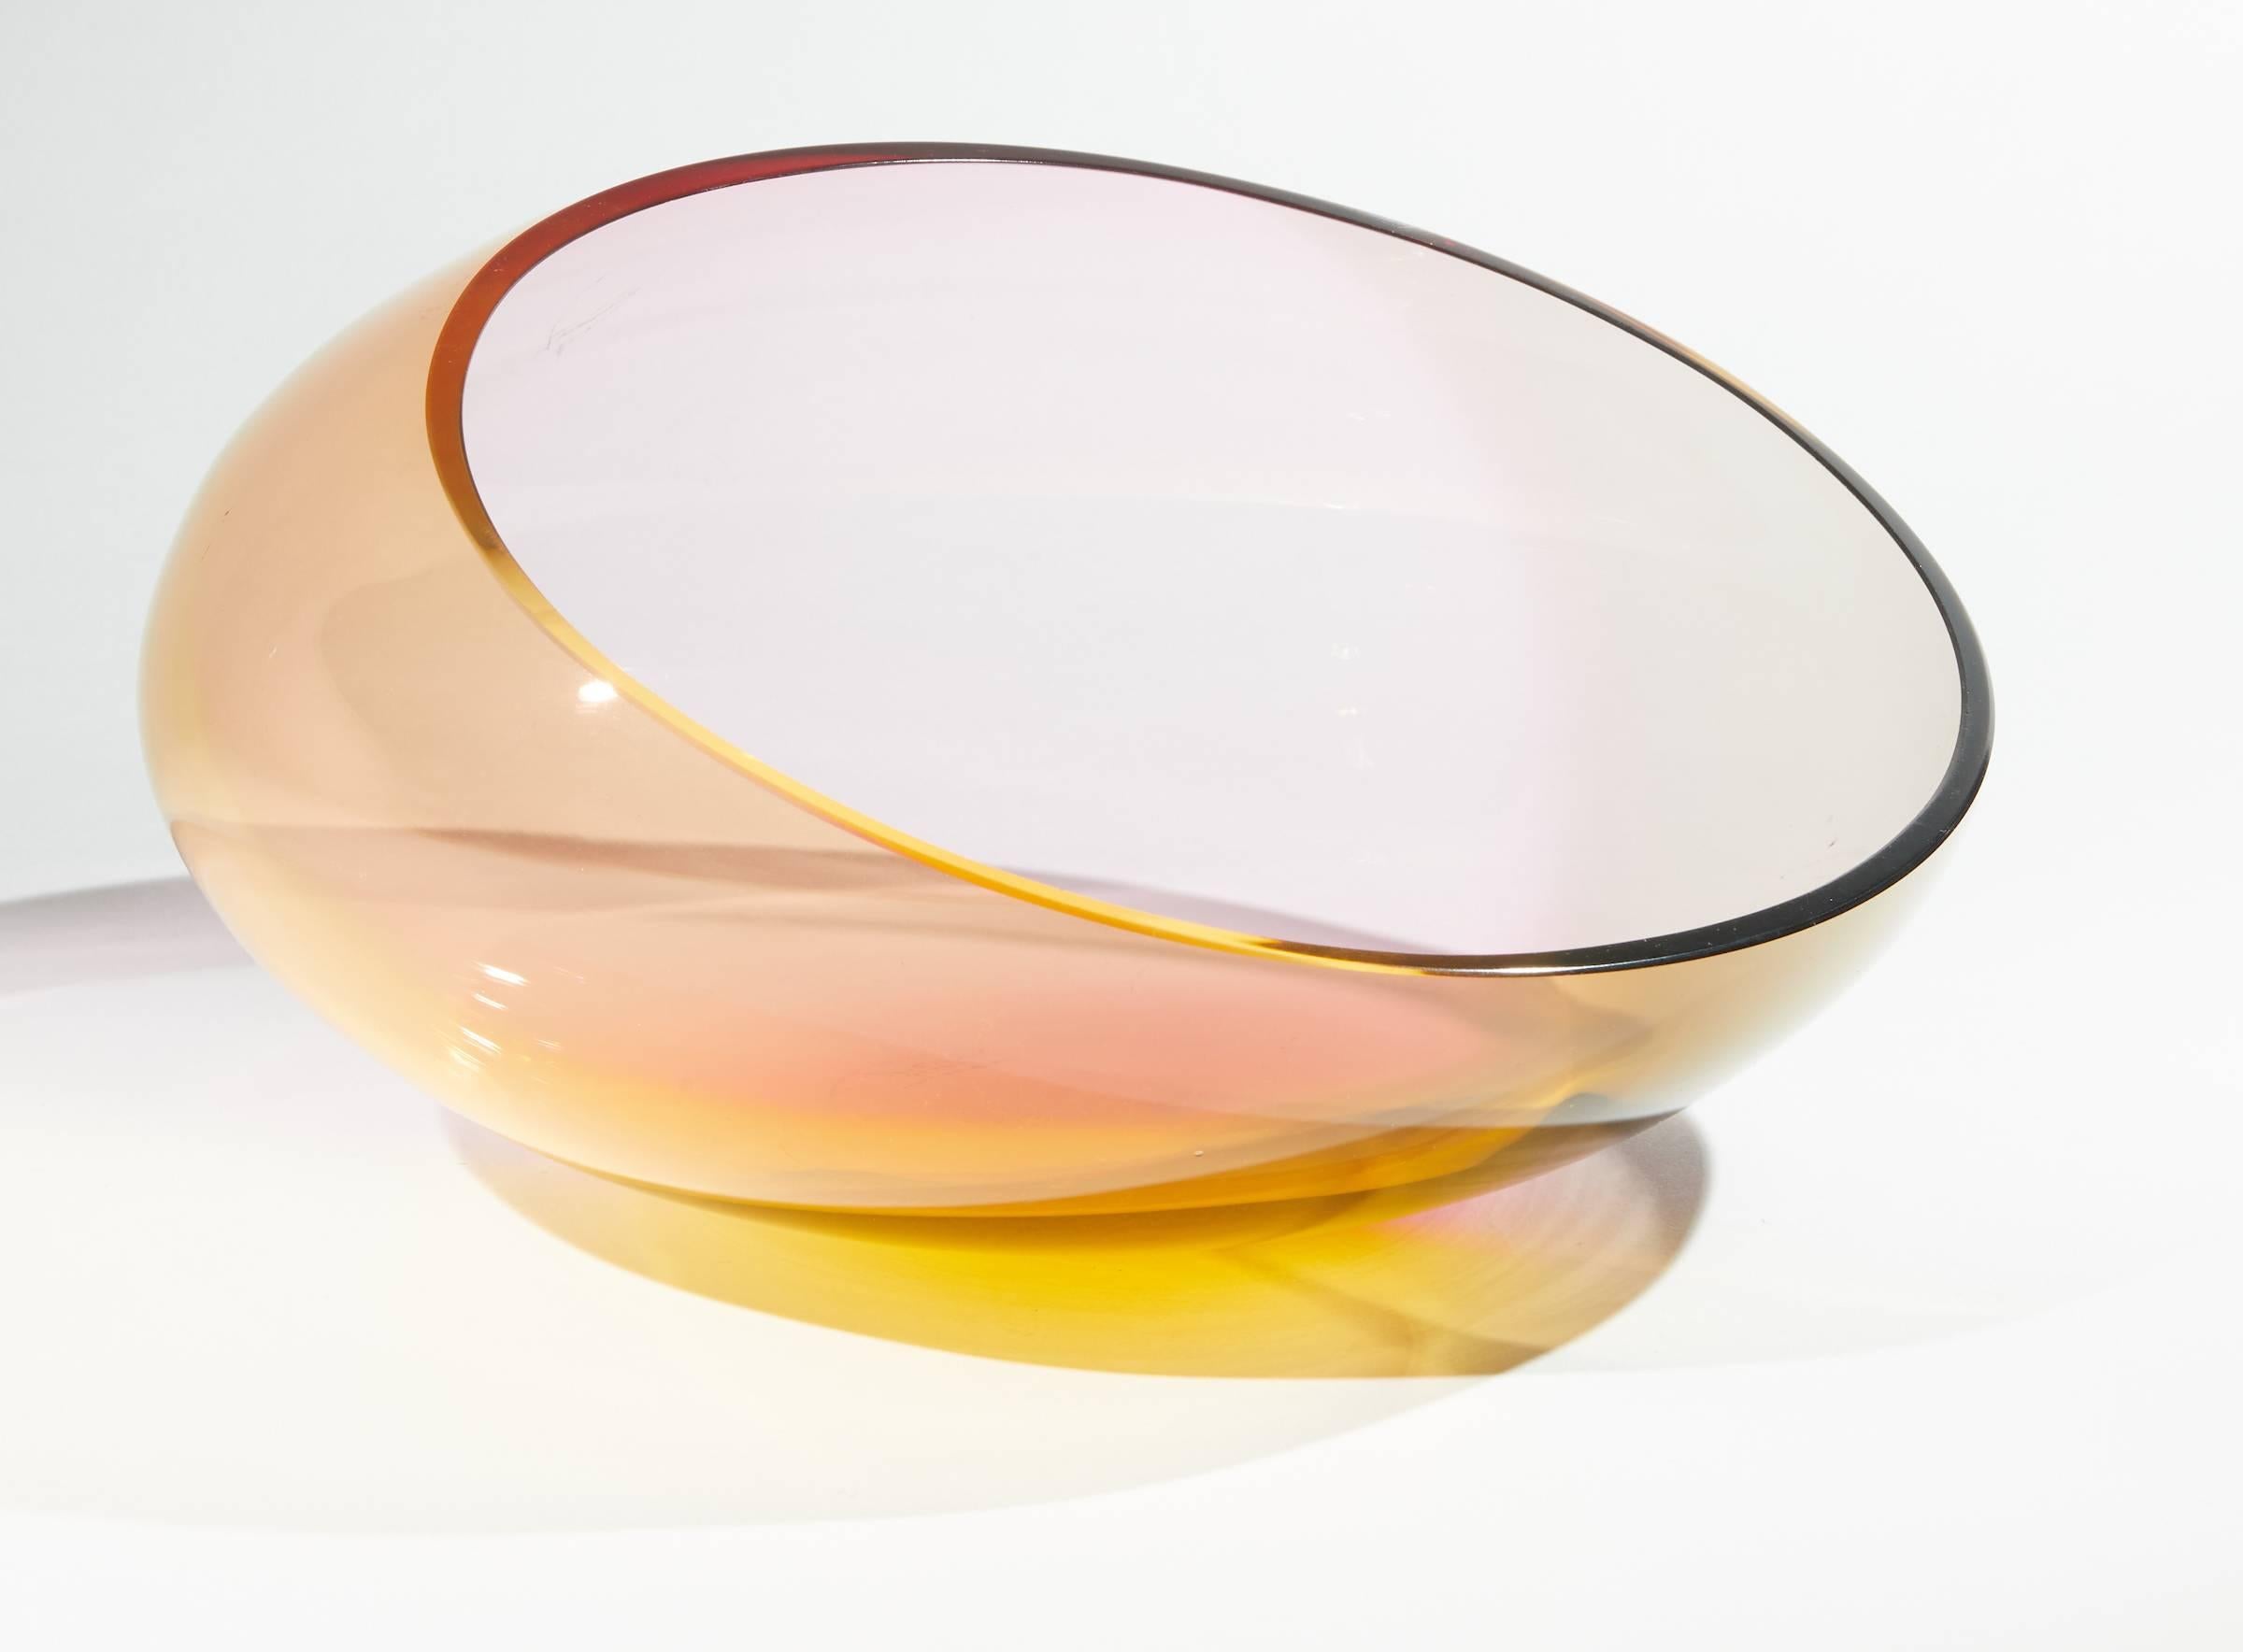 Dreifarbige, schräg geschliffene Glasschale von Kjell Engman für Kosta Boda.